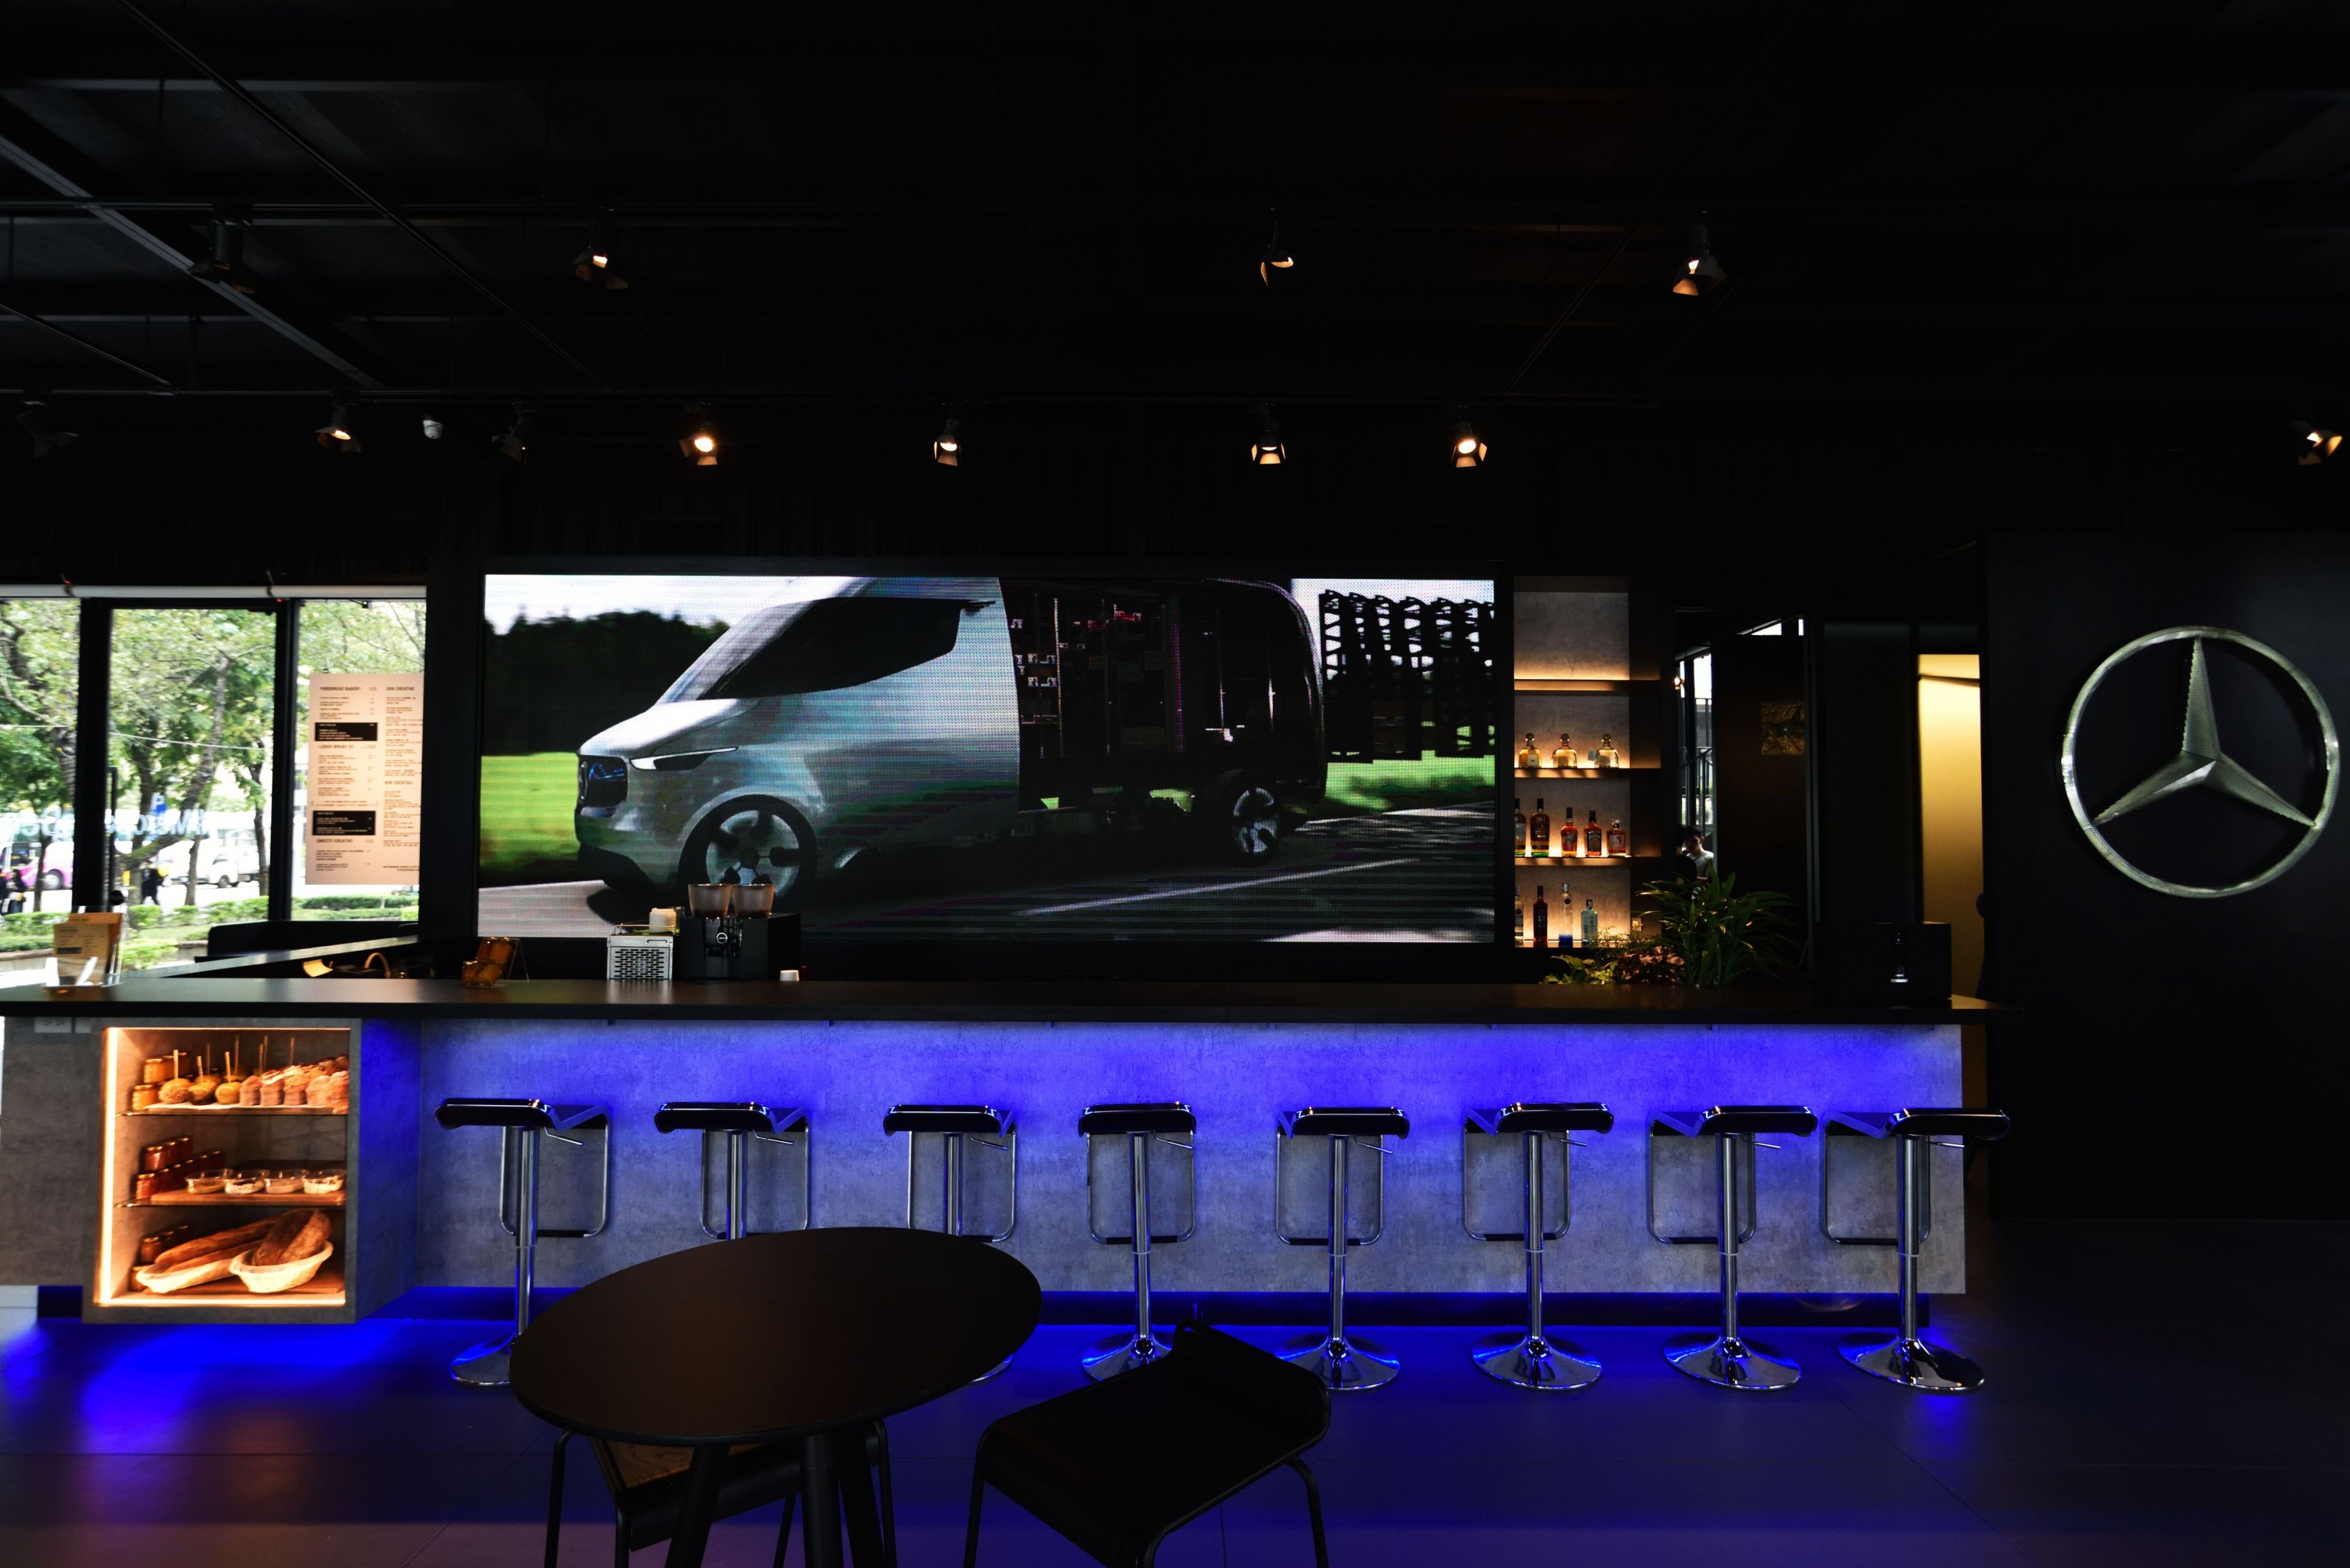 藍冷光色調的吧檯區搭配後方巨大的LED螢幕塑造未來科技感.JPG